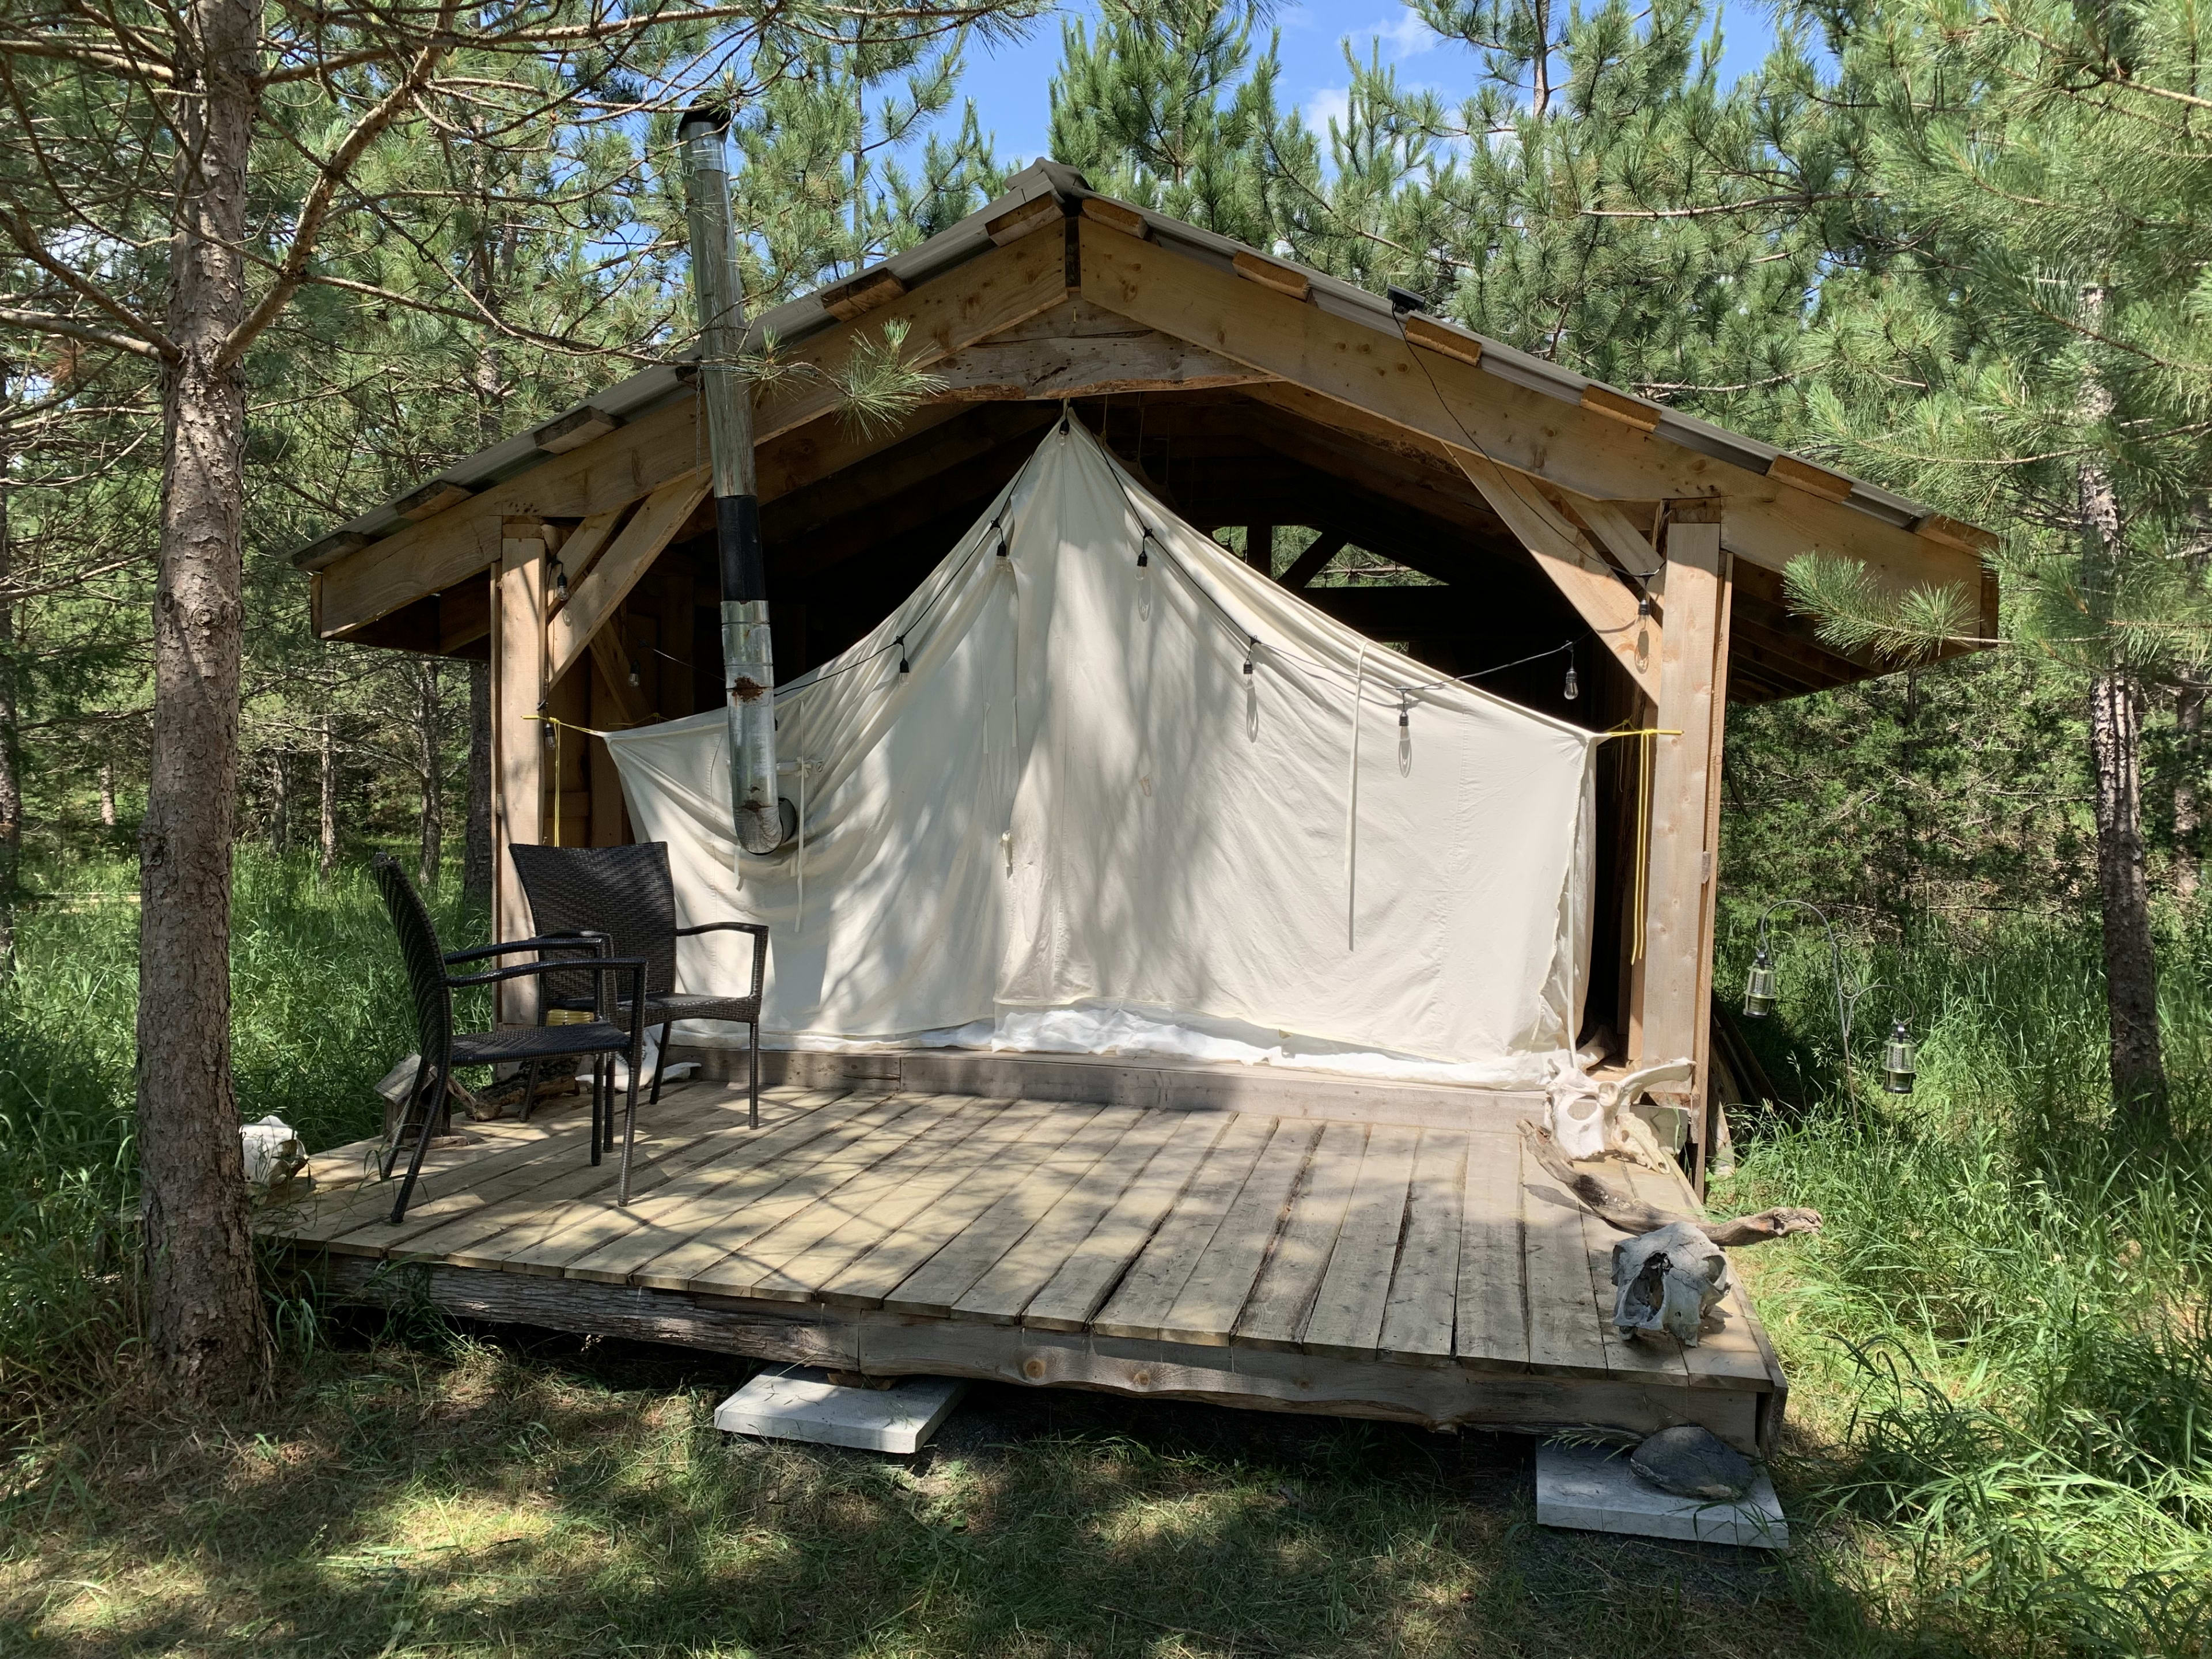 The Camper's Den